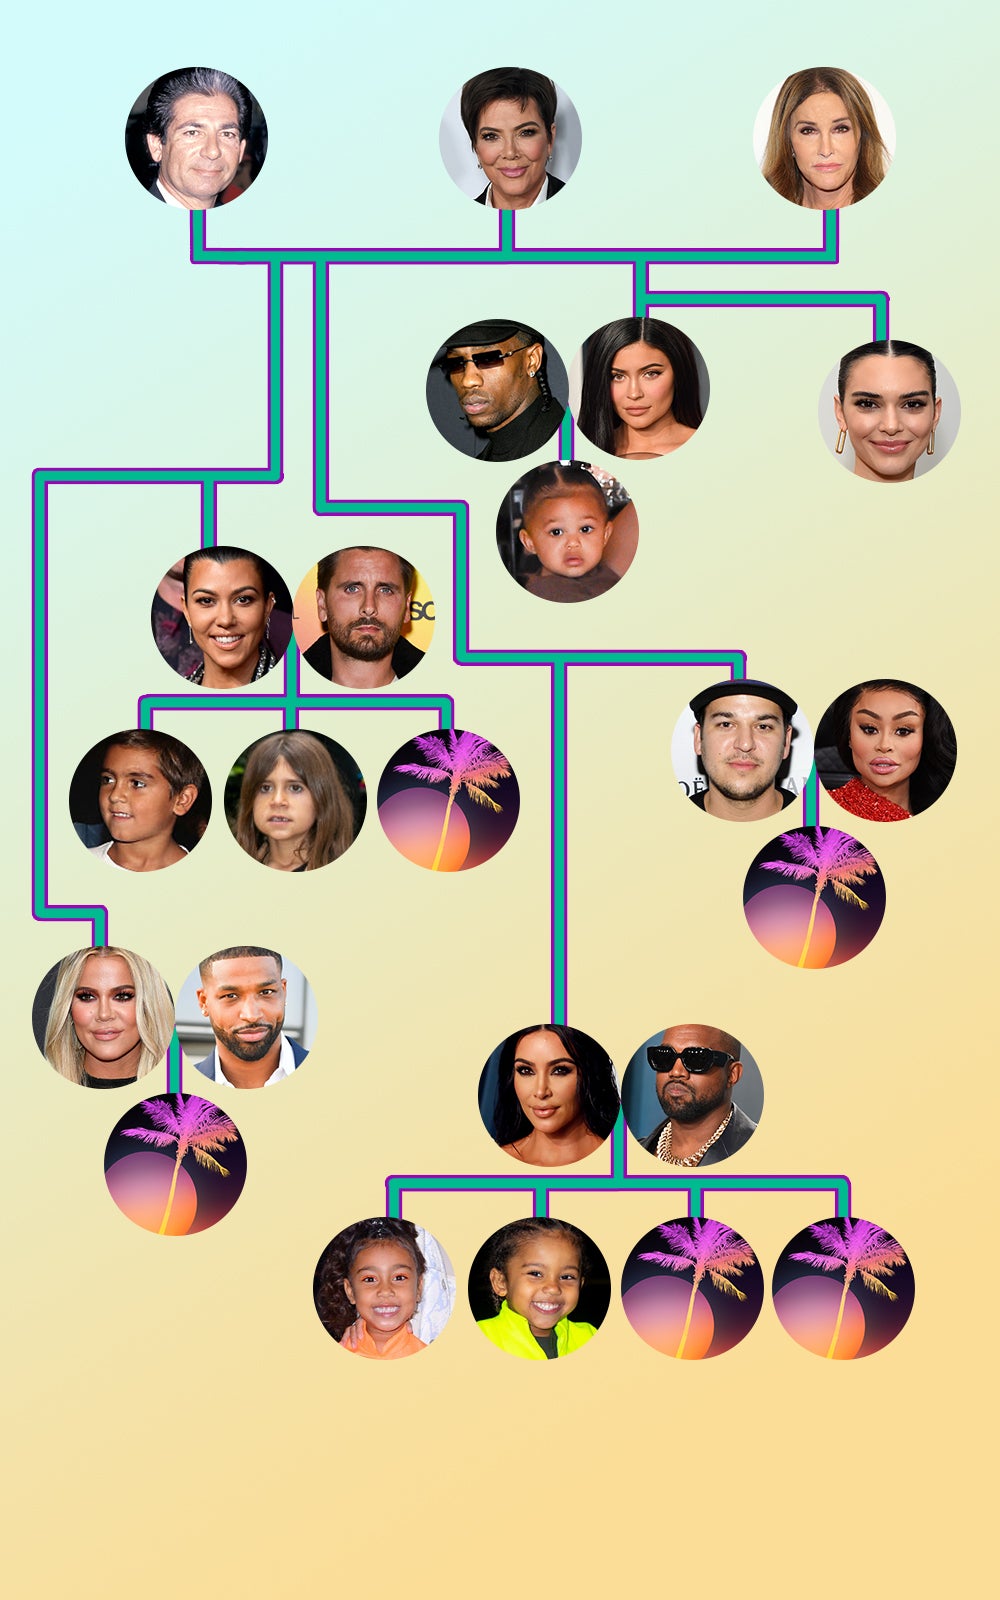 Name a kardashian family member